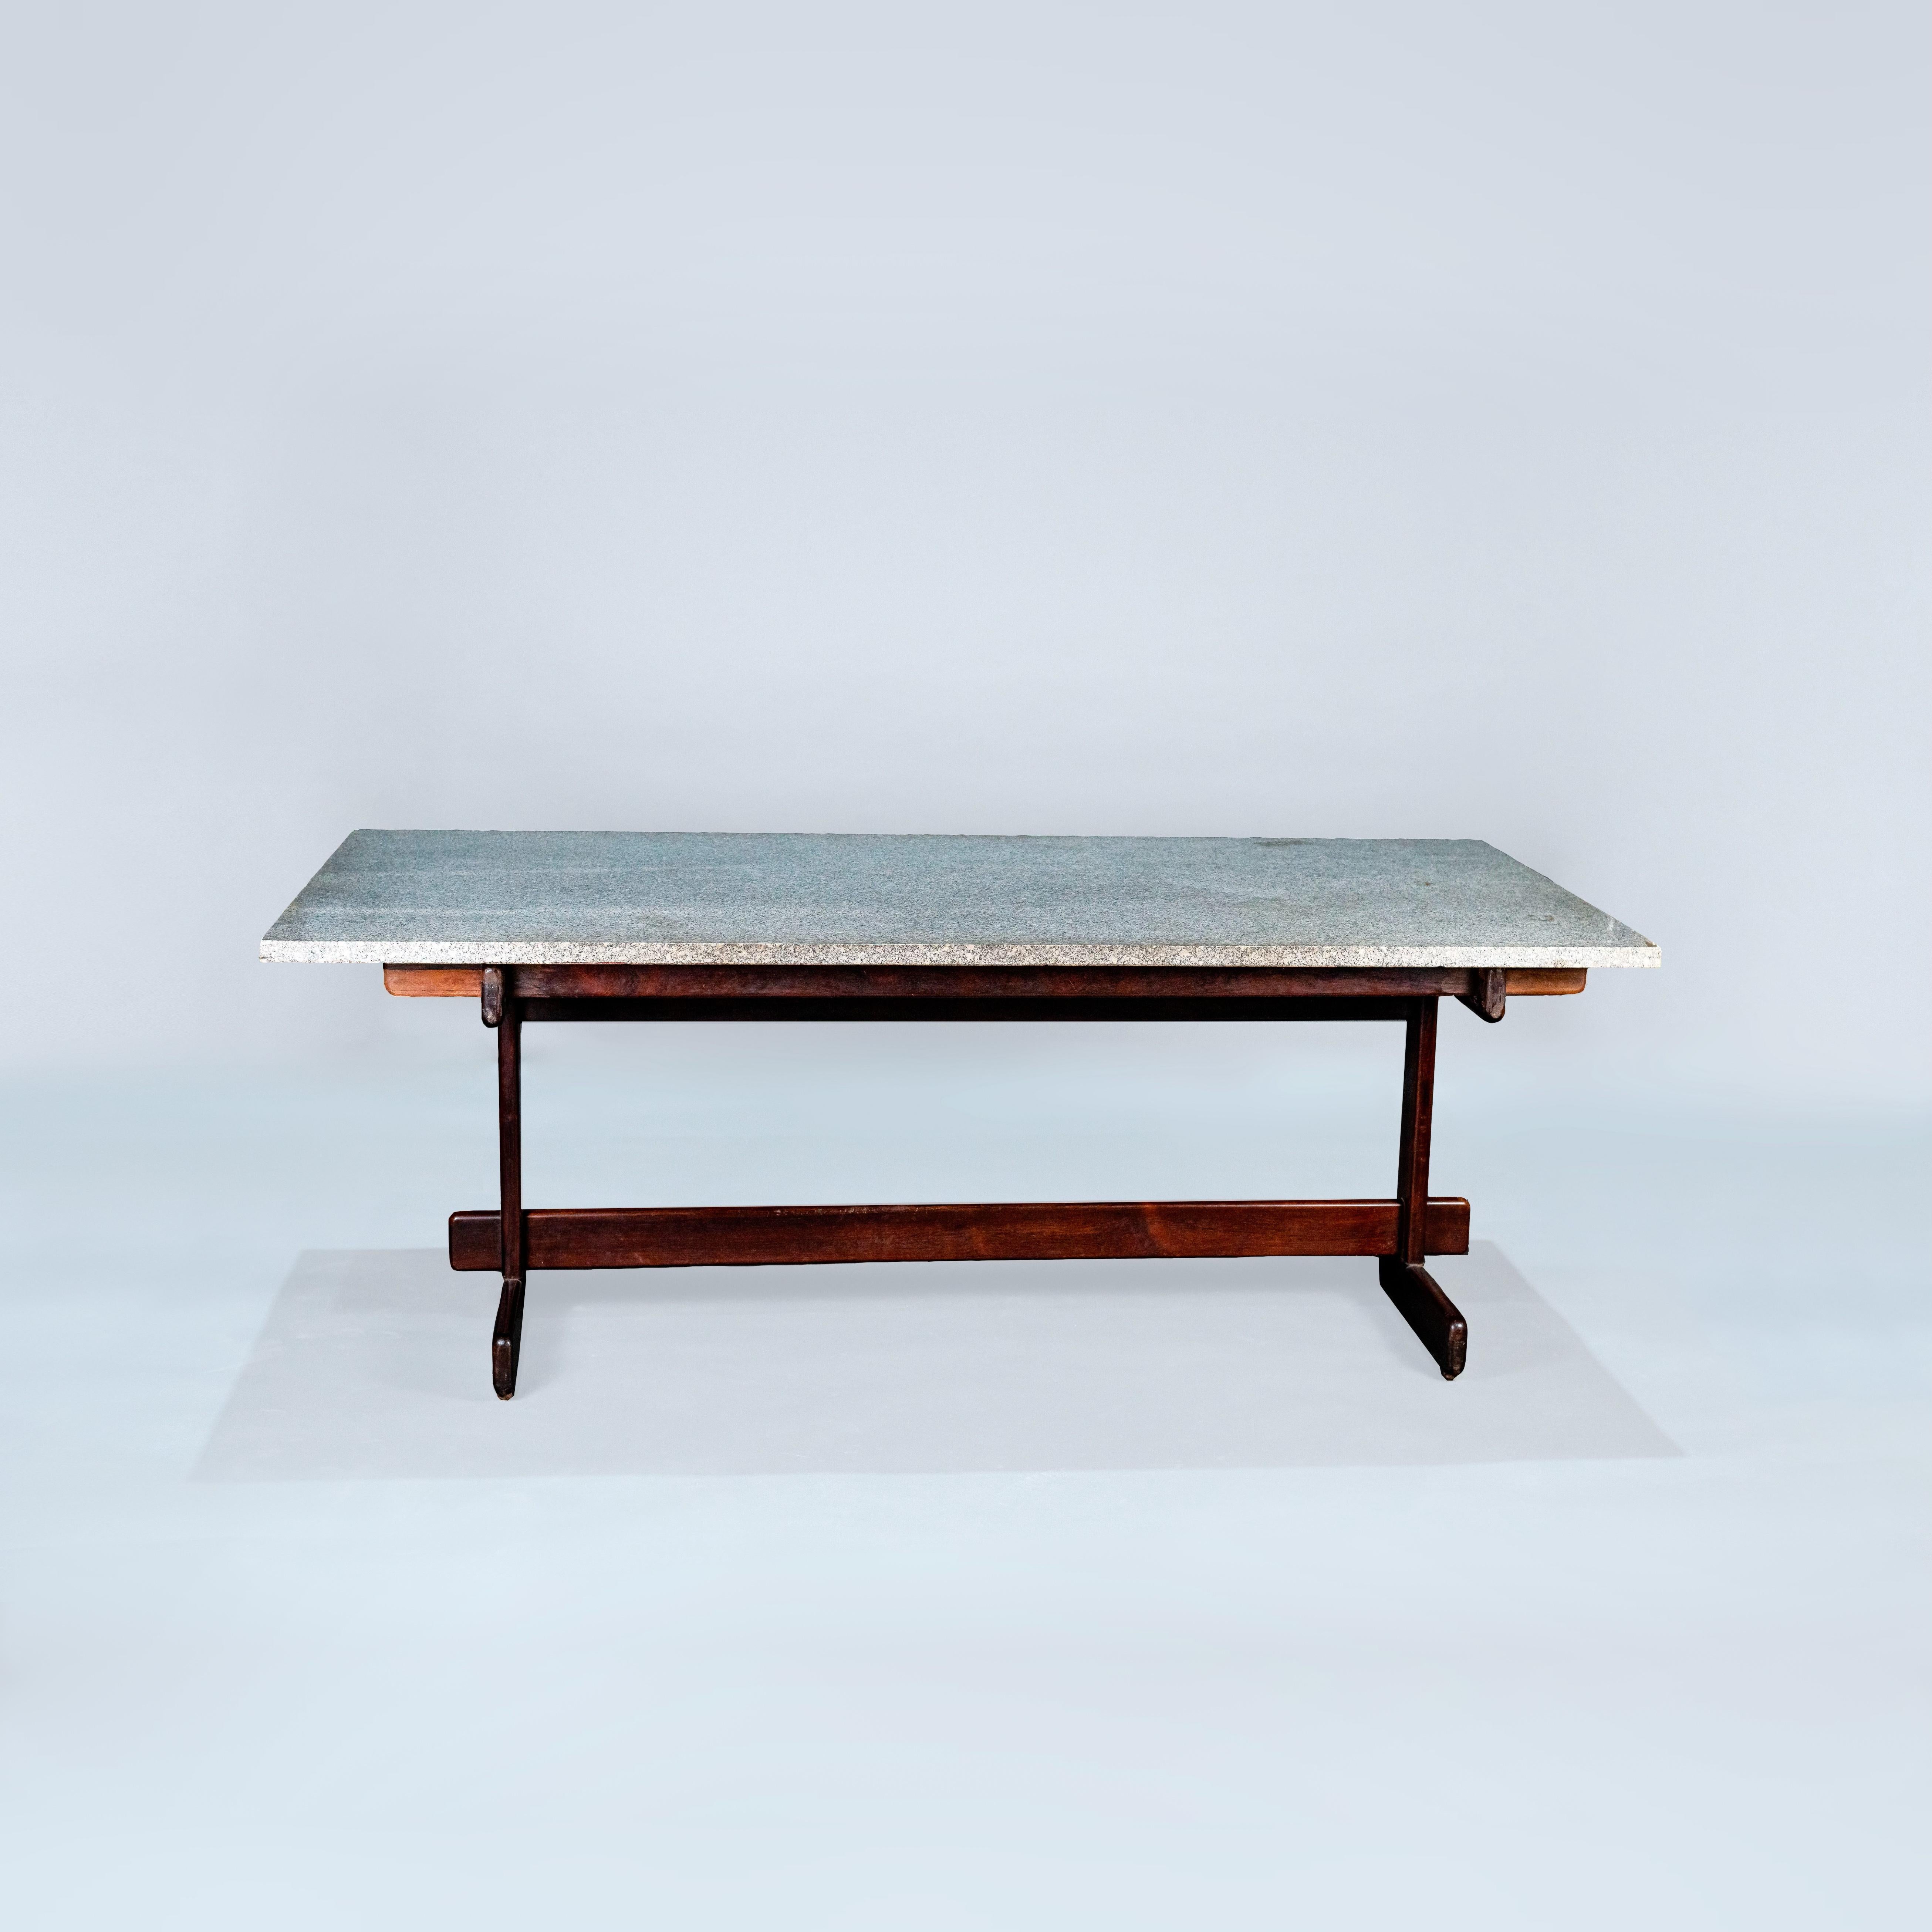 Cette élégante table de salle à manger de l'atelier Moveis Cantu, datant de 1968, est une pièce remarquable qui allie un style intemporel et une qualité artisanale exceptionnelle.

La table porte fièrement le Label original de l'atelier, témoignant